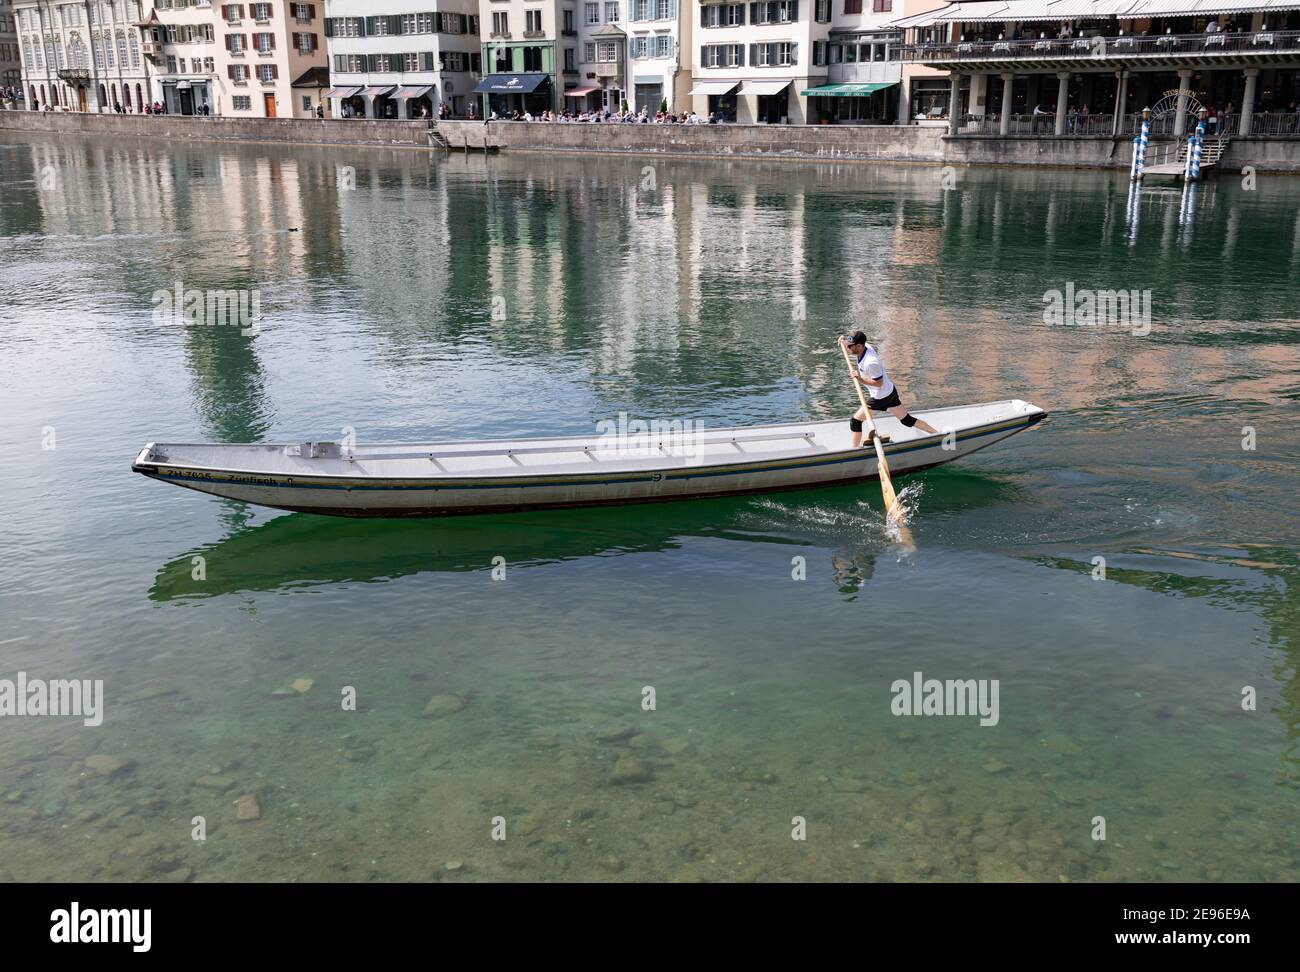 zurich, suisse - 25 avril 2019 : un jeune homme dans un t-shirt blanc pagaies debout dans un long barque le long du limmat, la rivière bleu-vert est v Banque D'Images